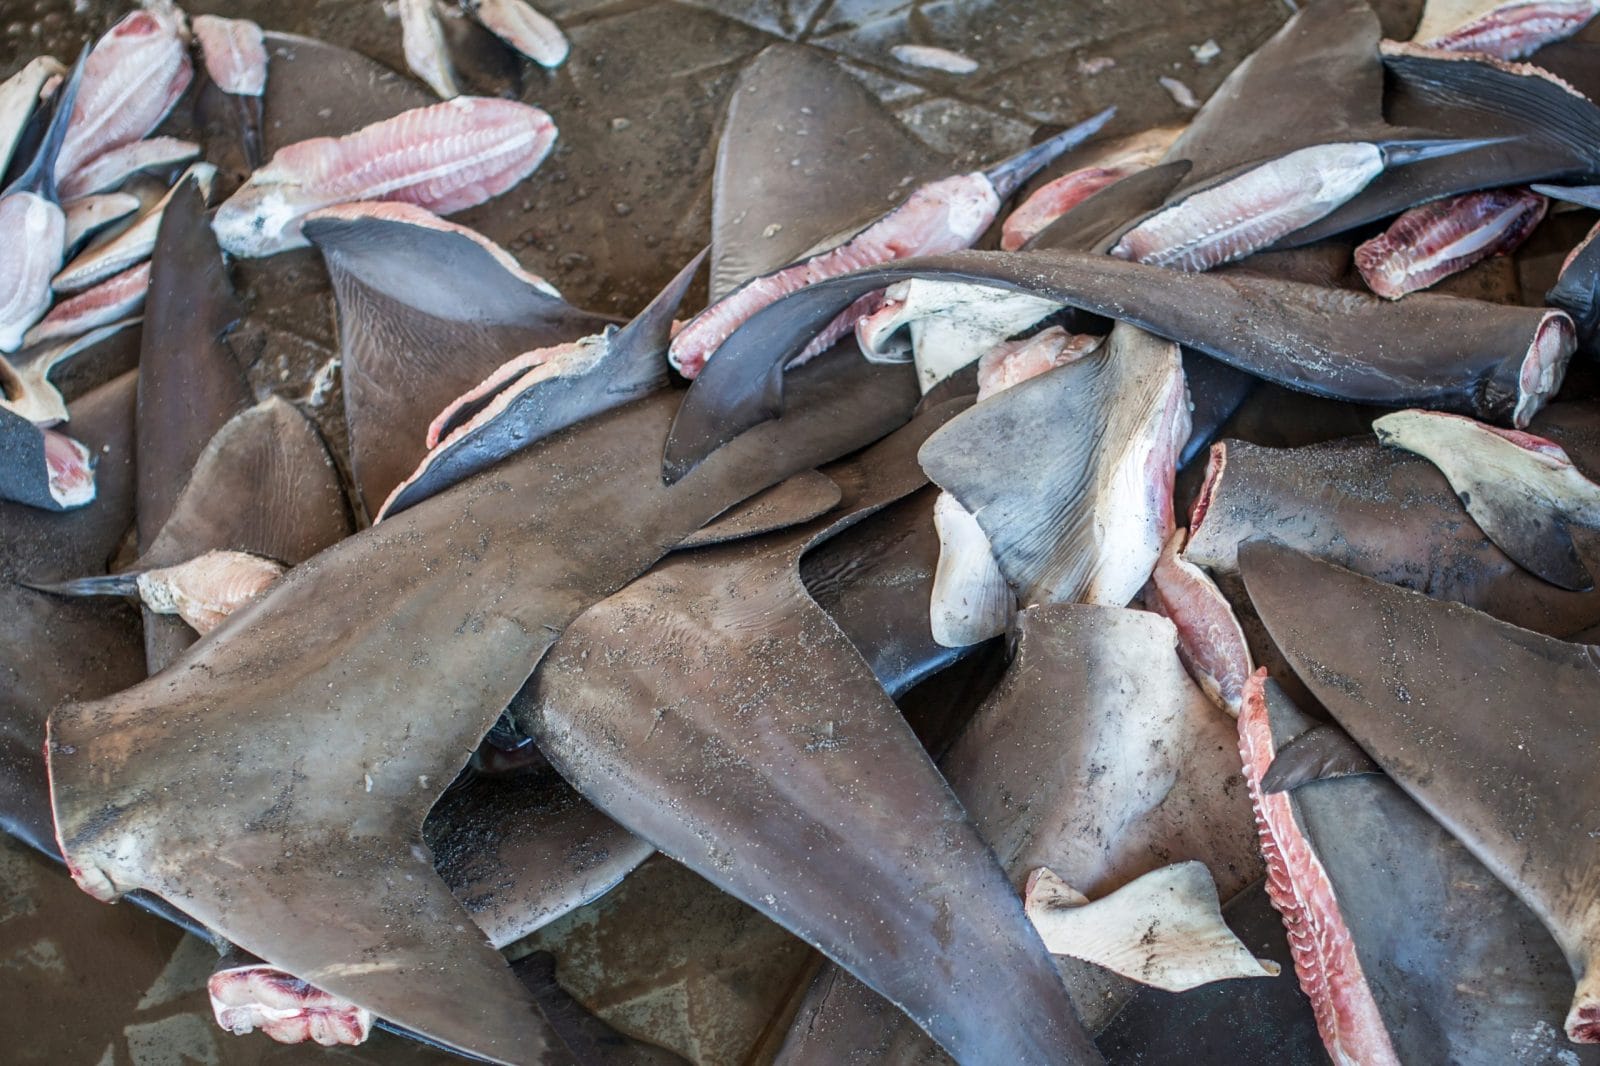 Pile of shark fins